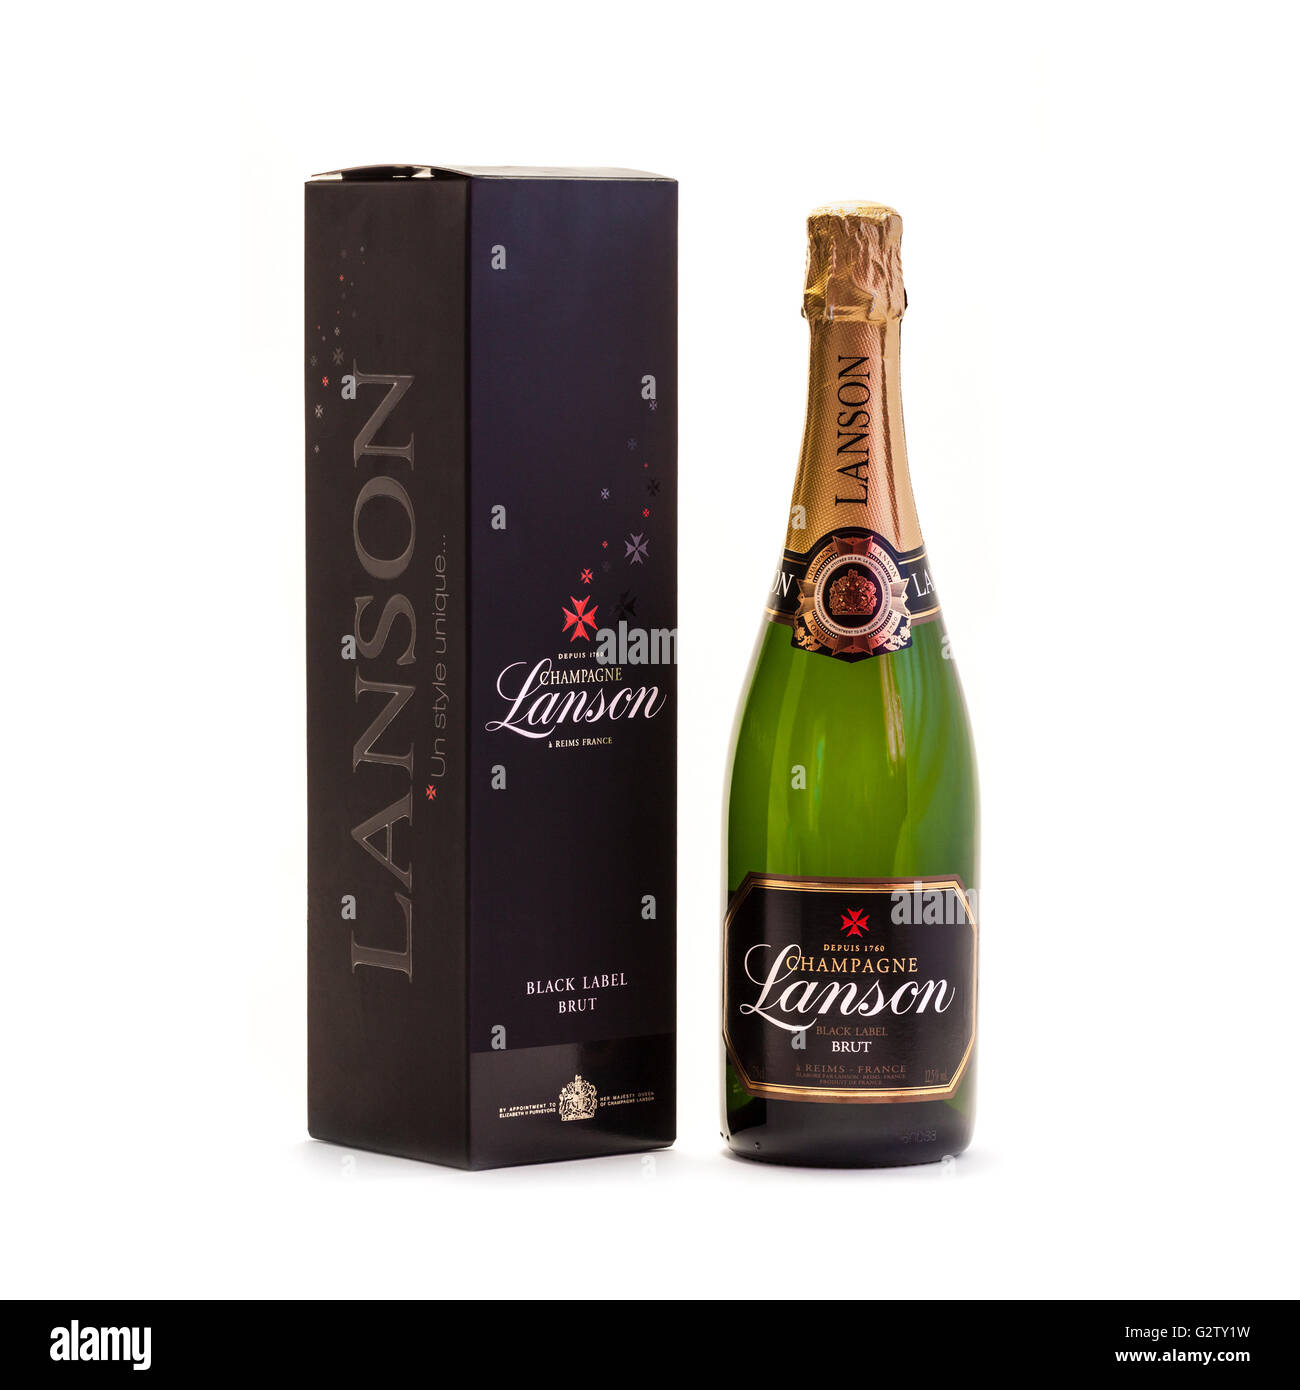 Bottiglia di Lanson Black Label Brut Champagne con confezione regalo. Lanson fu fondata nel 1760 da un magistrato, François Delamotte. Foto Stock